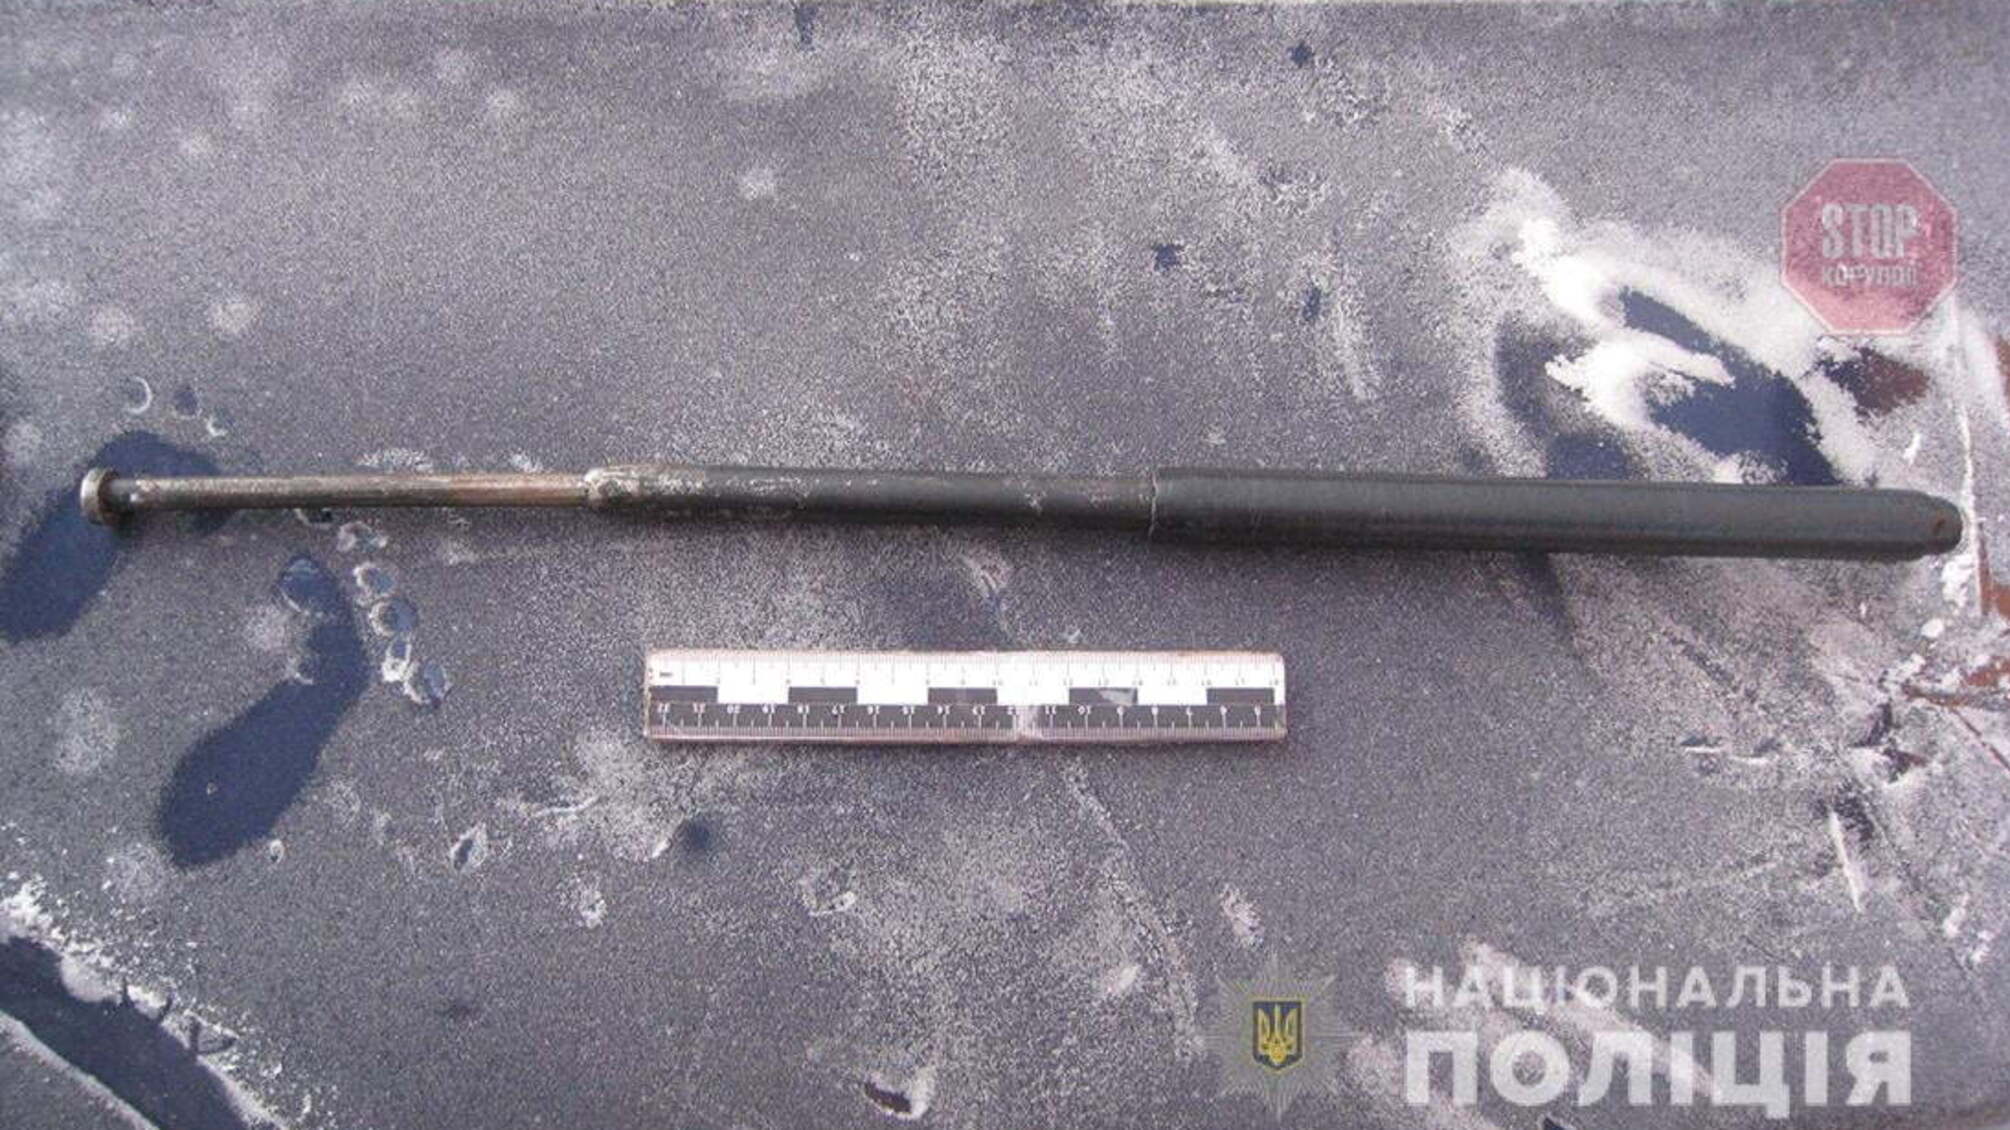 Користувалися зброєю та боєприпасами для власного захисту: на Житомирщині затримали чоловіків